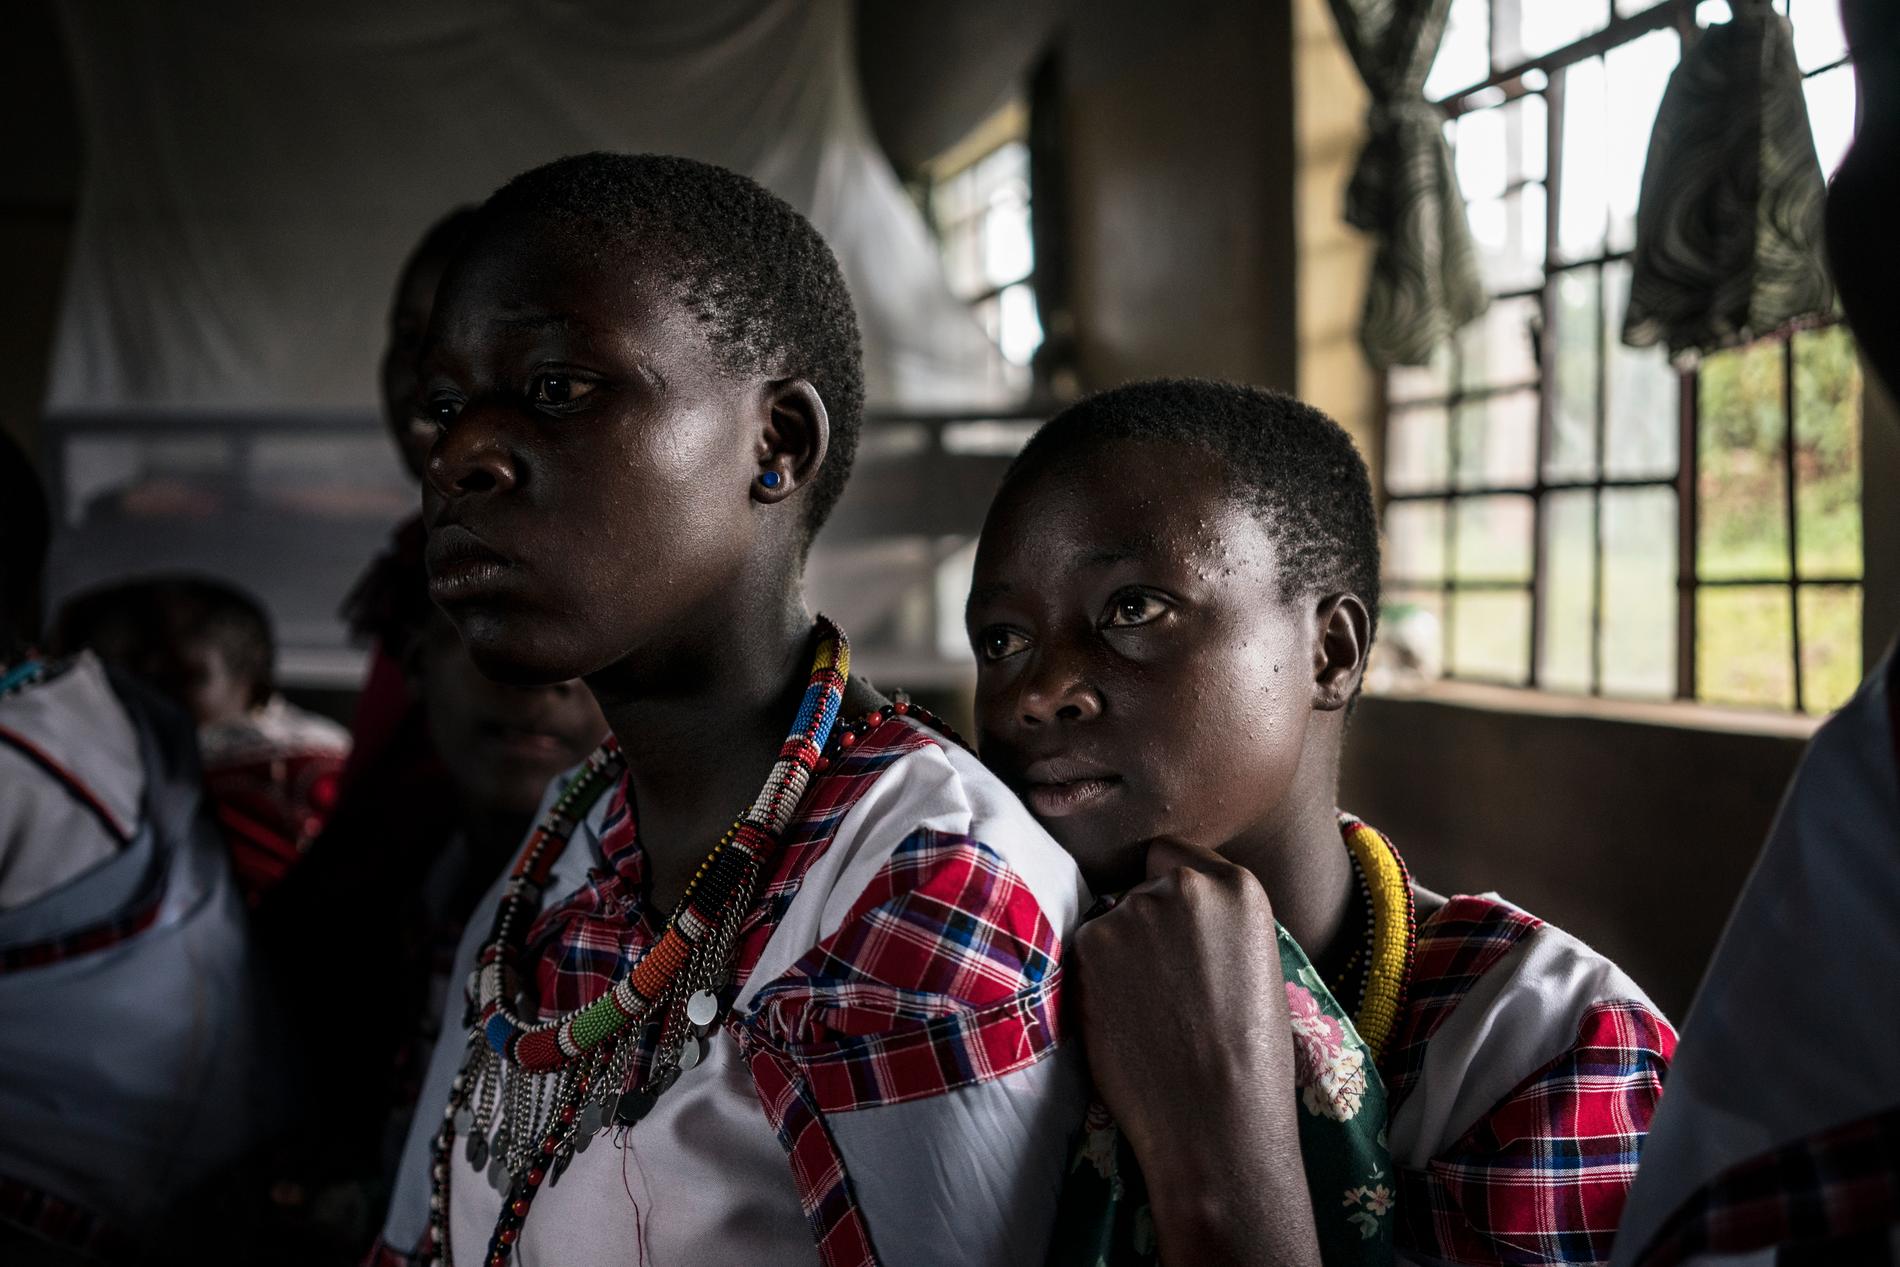 Tusentals flickor – och även pojkar – har hört Gunilla föreläsa om riskerna med könsstympning.